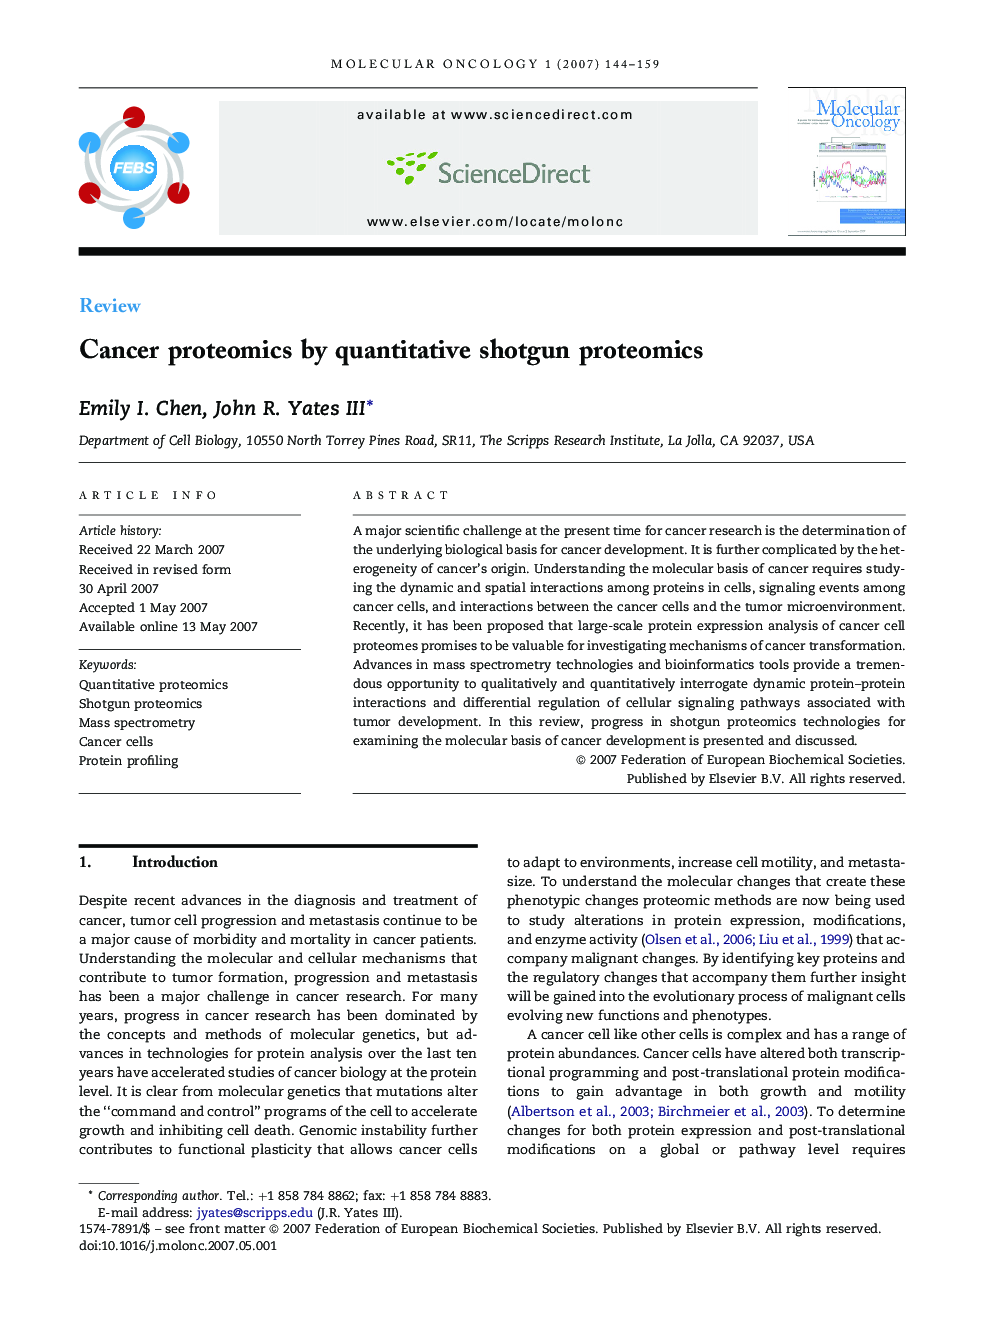 Cancer proteomics by quantitative shotgun proteomics